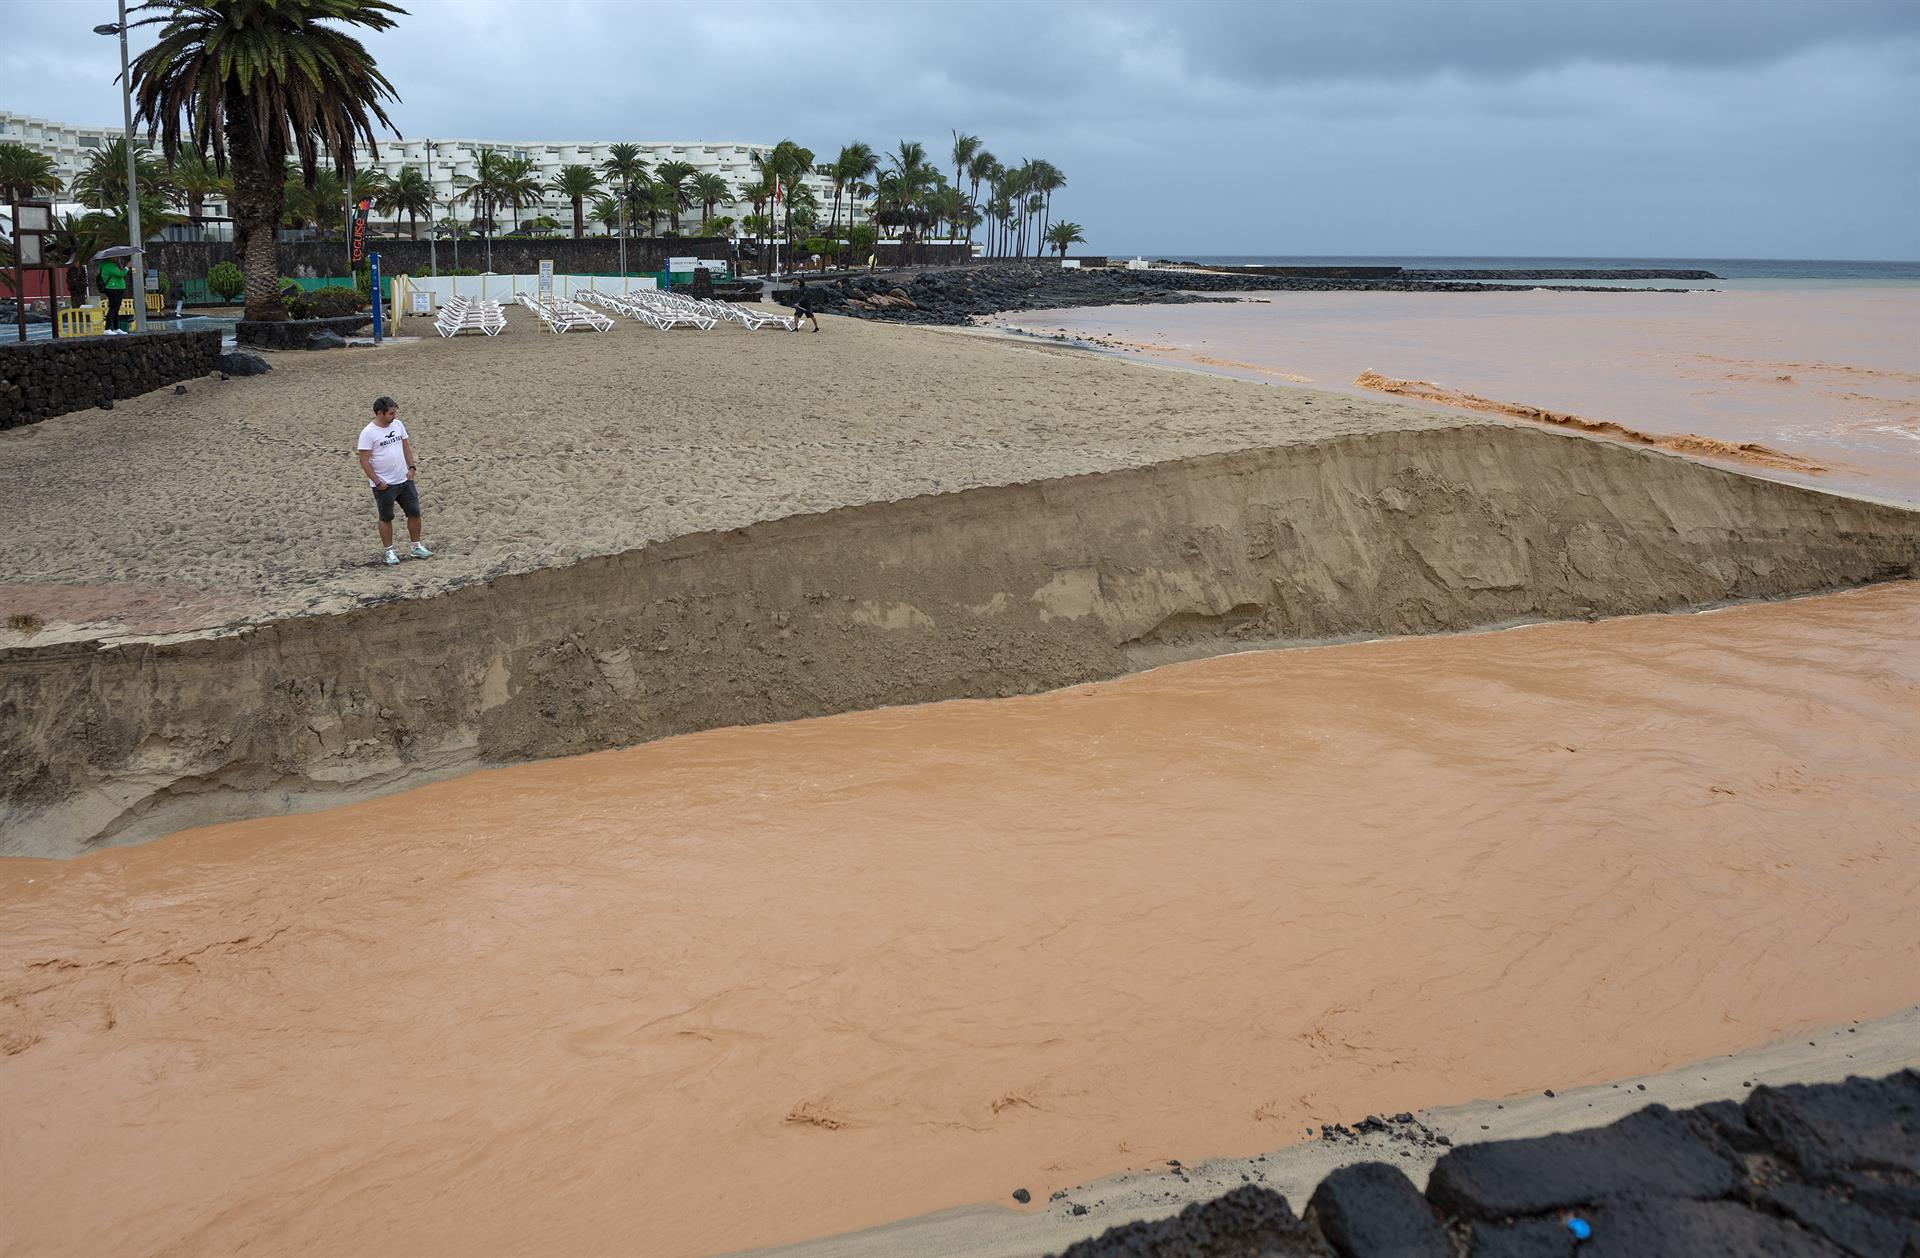 Imagen de los efectos provocados por la tormenta tropical Hermine en la playa de Las Cucharas, en Costa Teguise (Lanzarote). EFE/ Adriel Perdomo